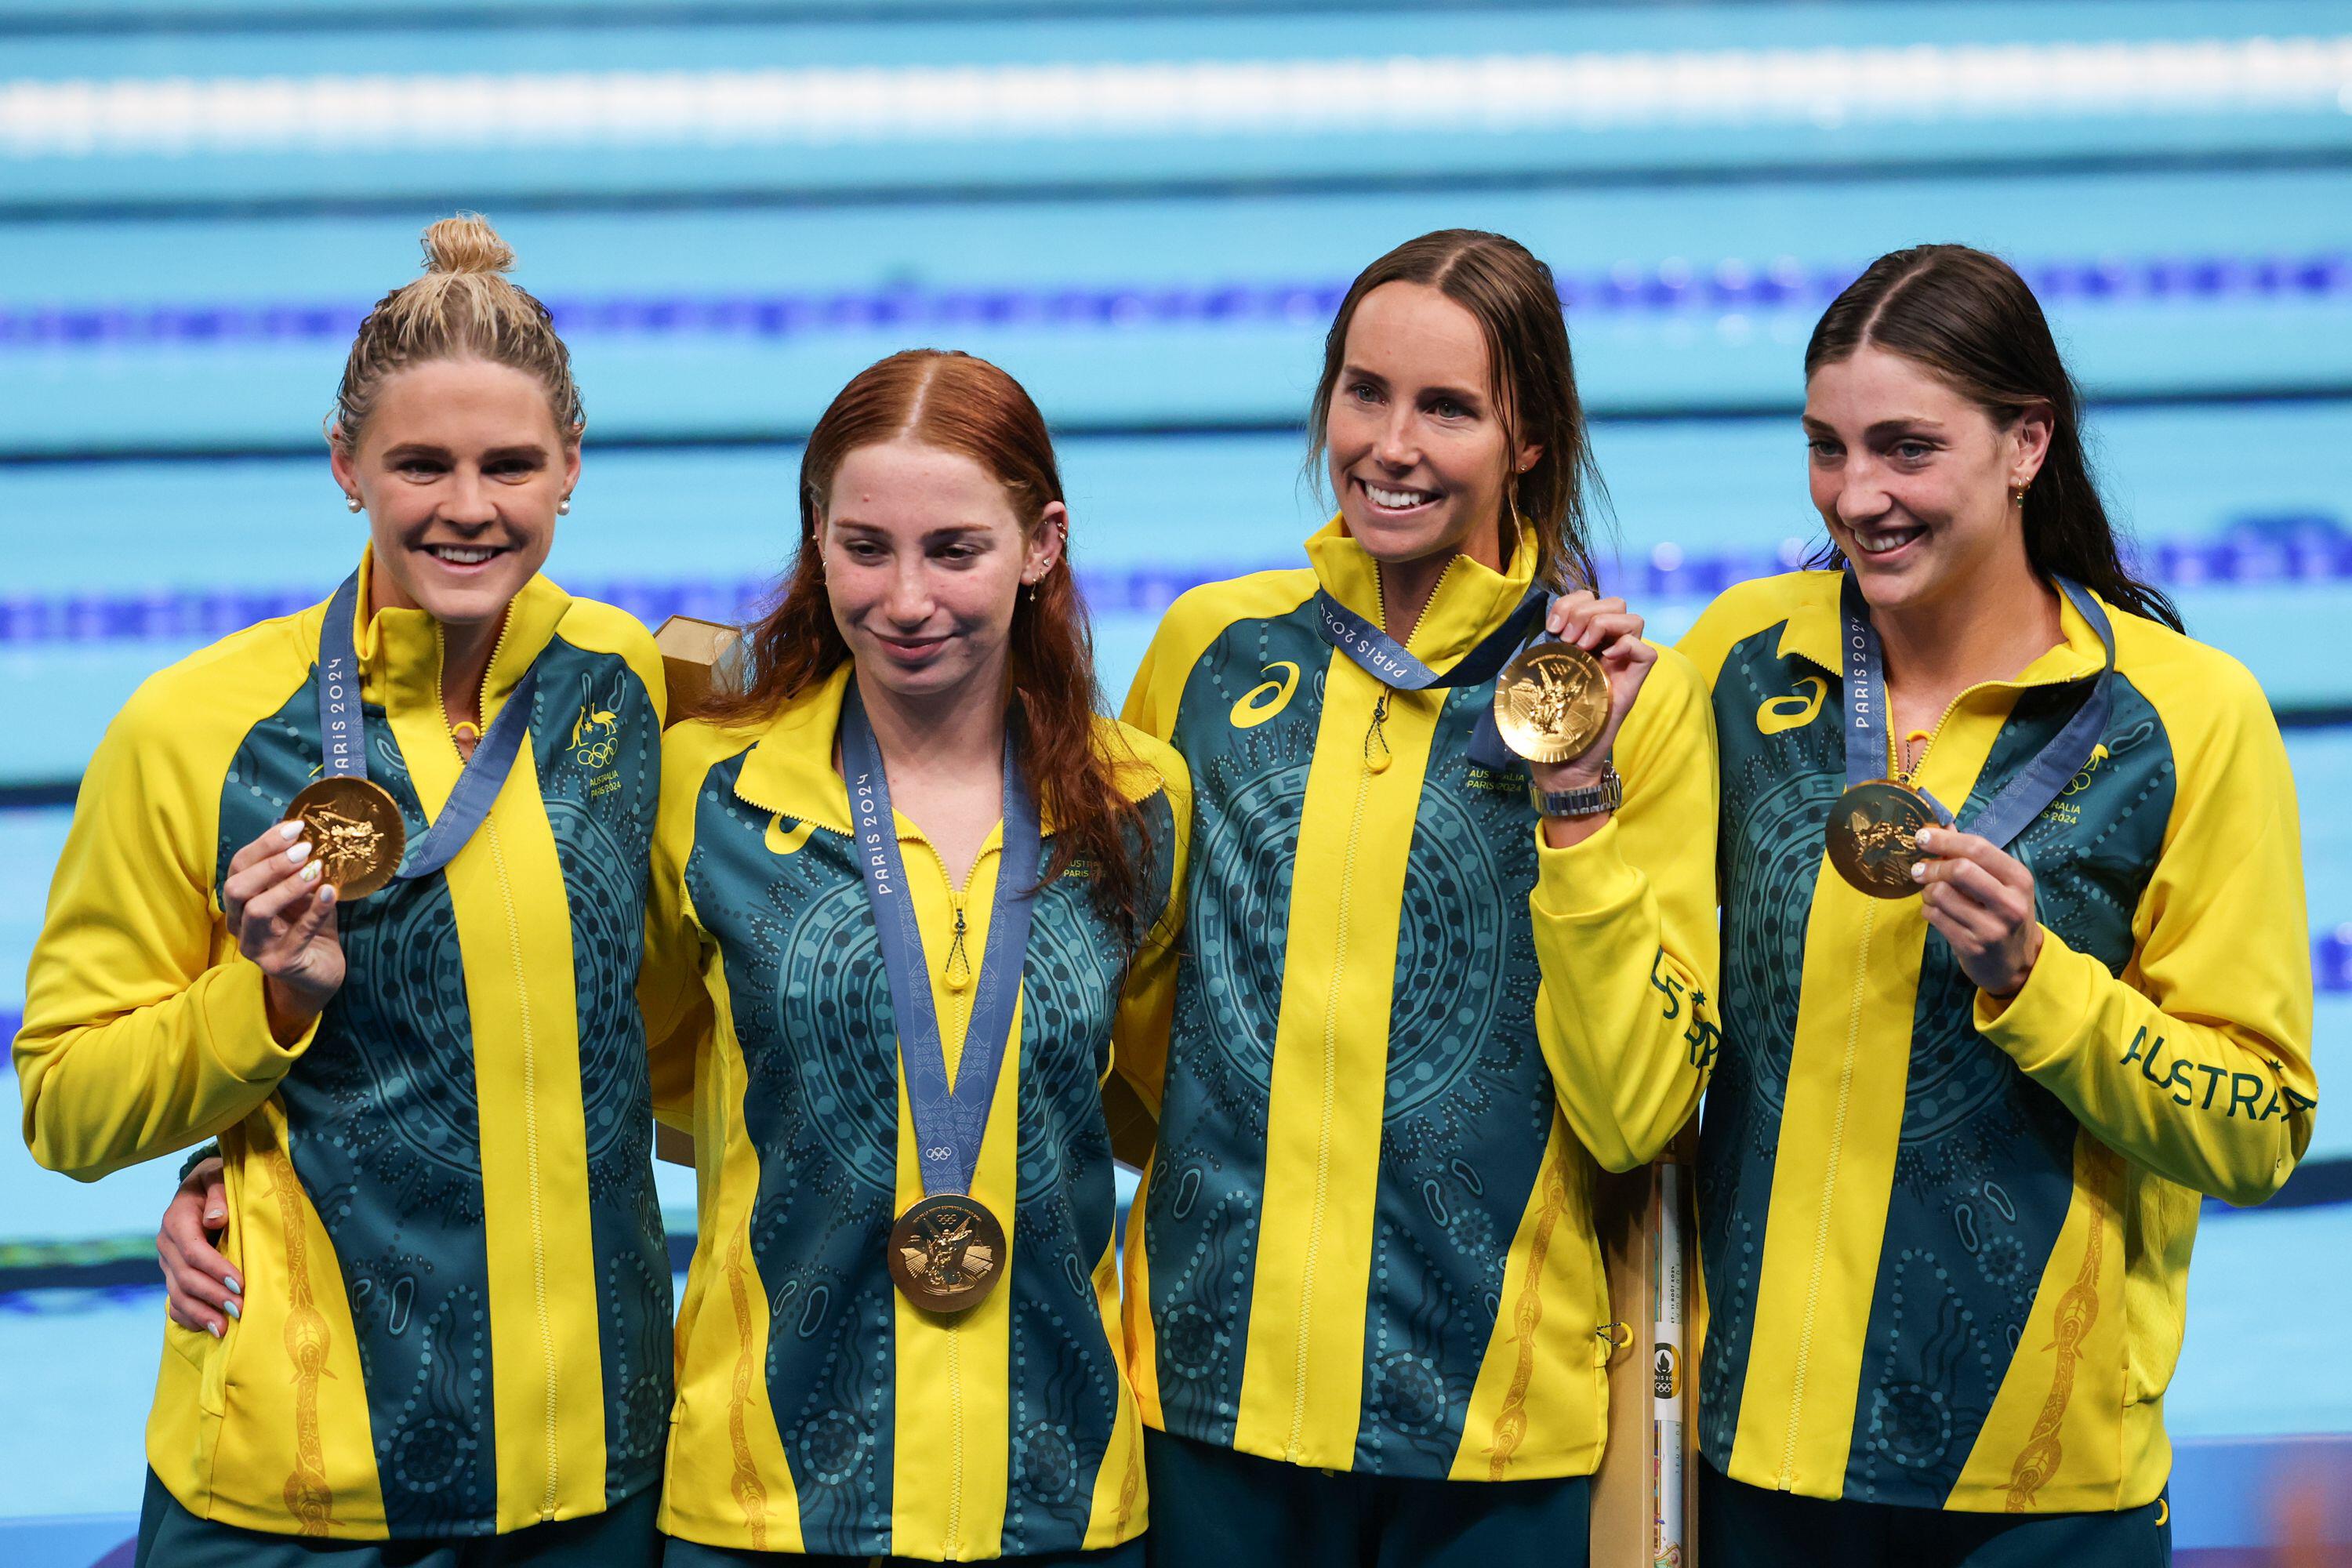 Ballard hizo un comentario sexista sobre los nadadores australianos ganadores de medallas de oro